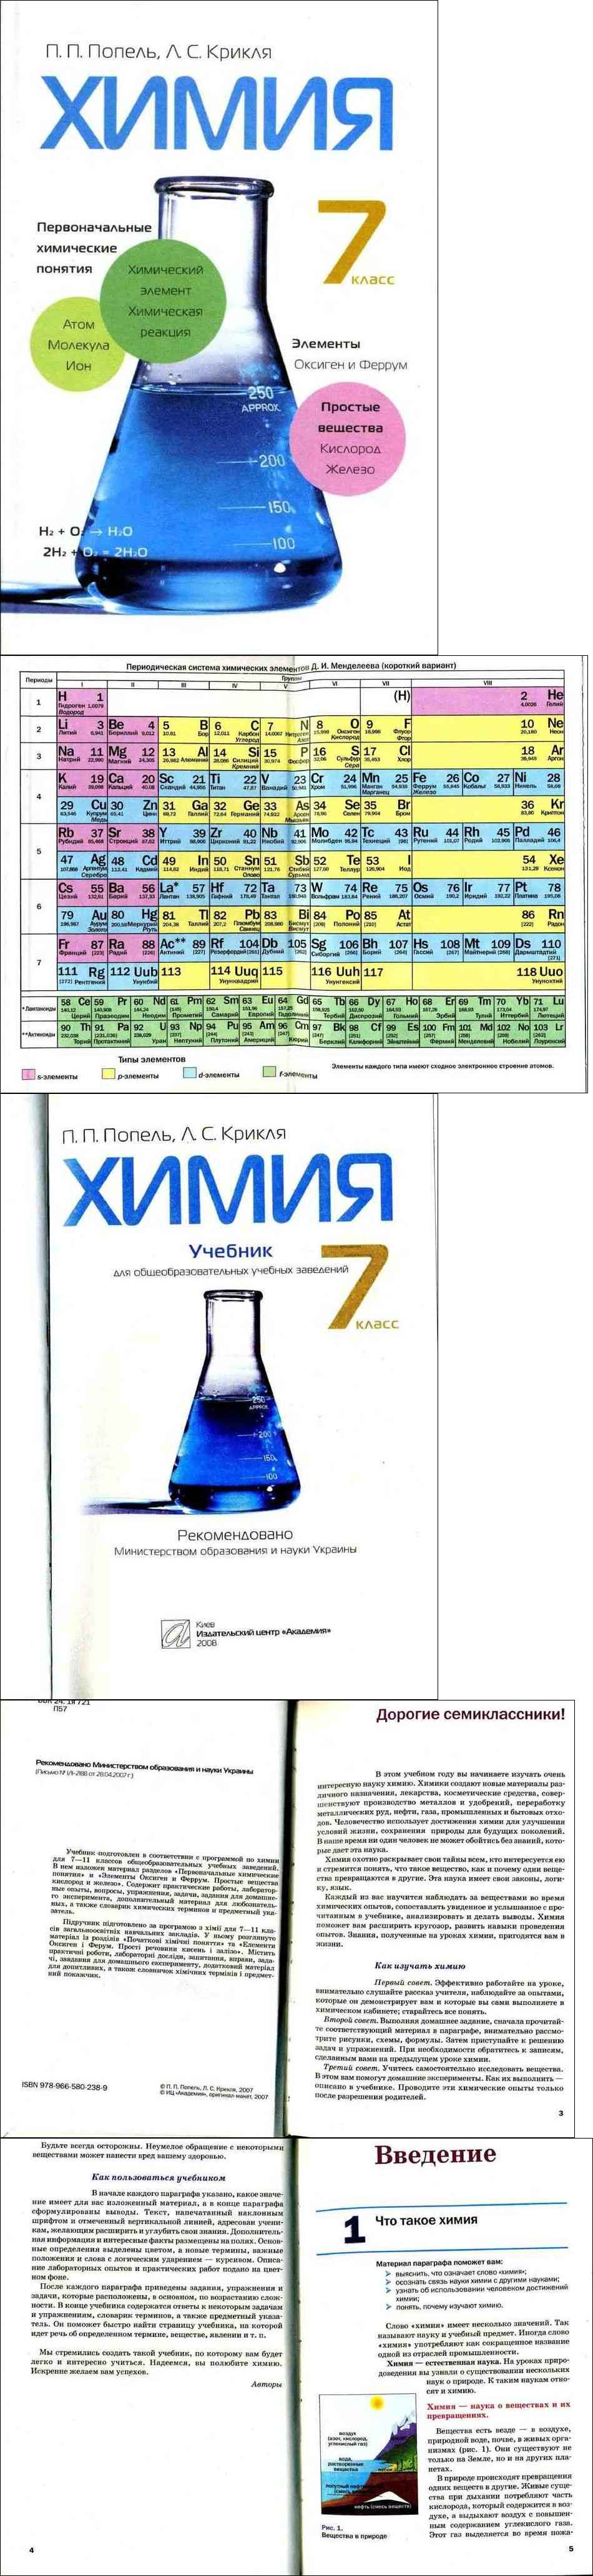 Химия 7 класс учебник практическая работа. Химия учебник. Химия 7 класс. Химия 7 класс учебник. Учебник по химии 7 класс.